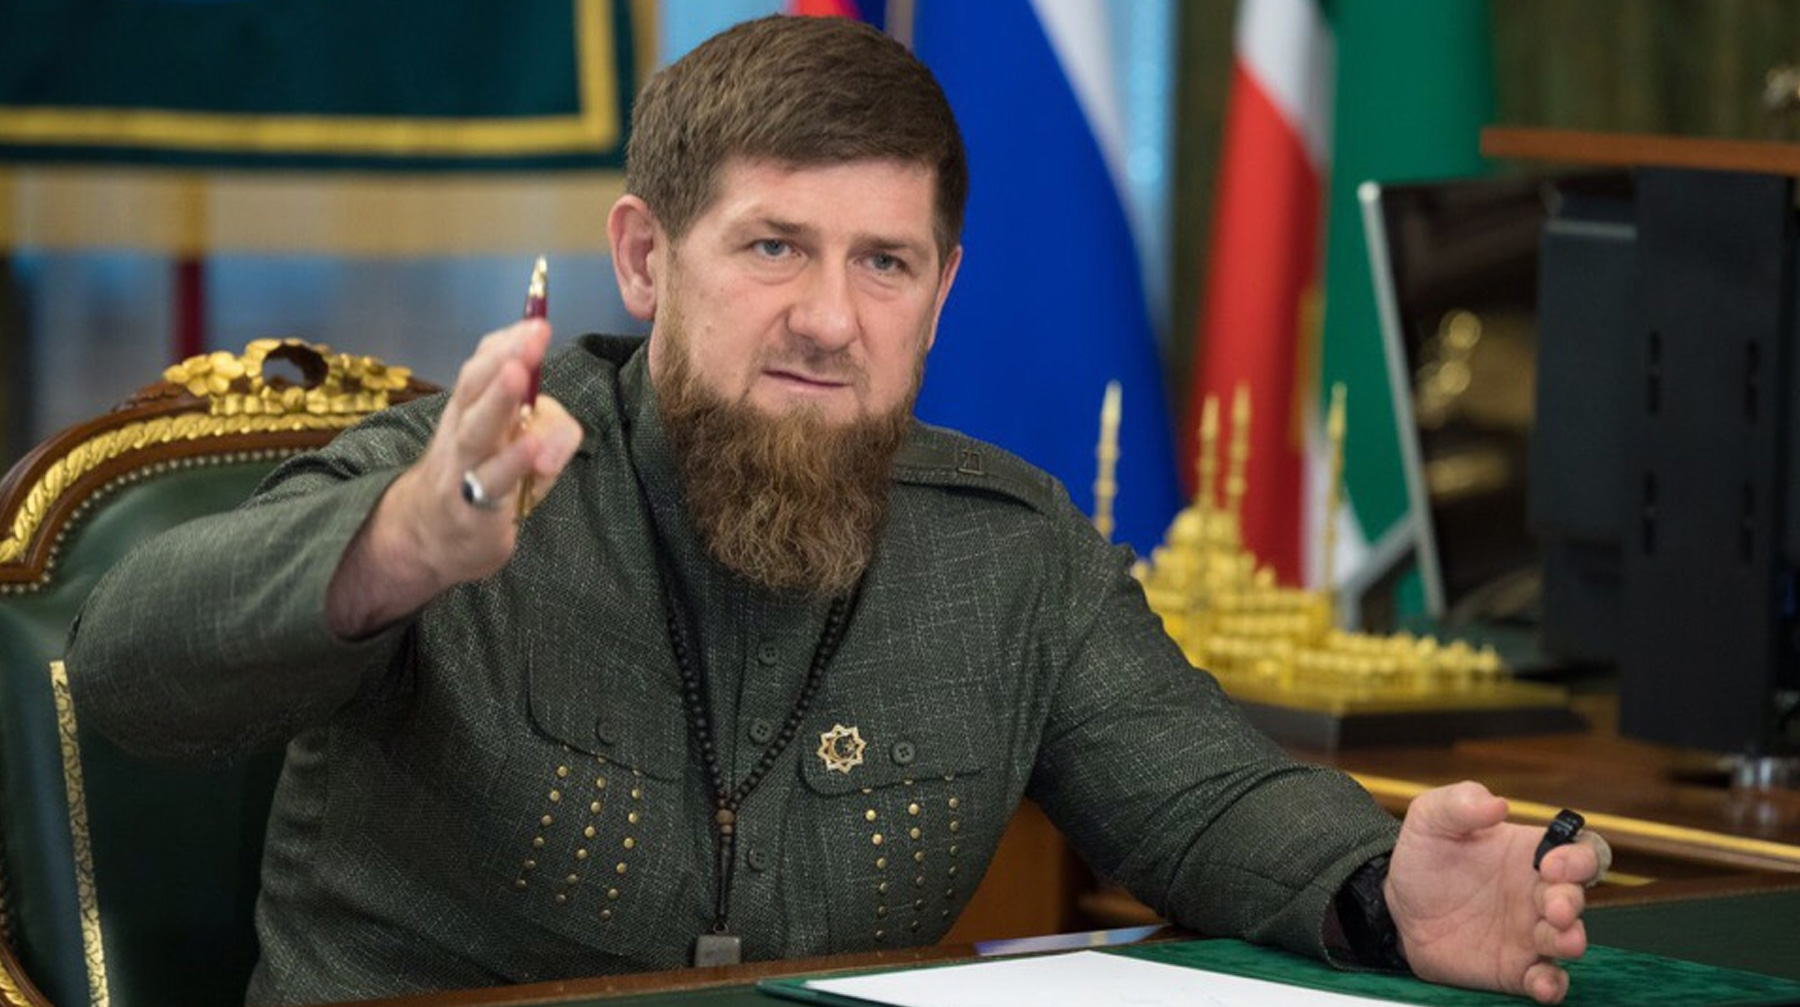 Глава Чечни назвал депутата Госдумы «трезвым политиком» и заявил, что она своей поправкой к Конституции озвучила «мысли народа» Фото: © vk.com / ramzan